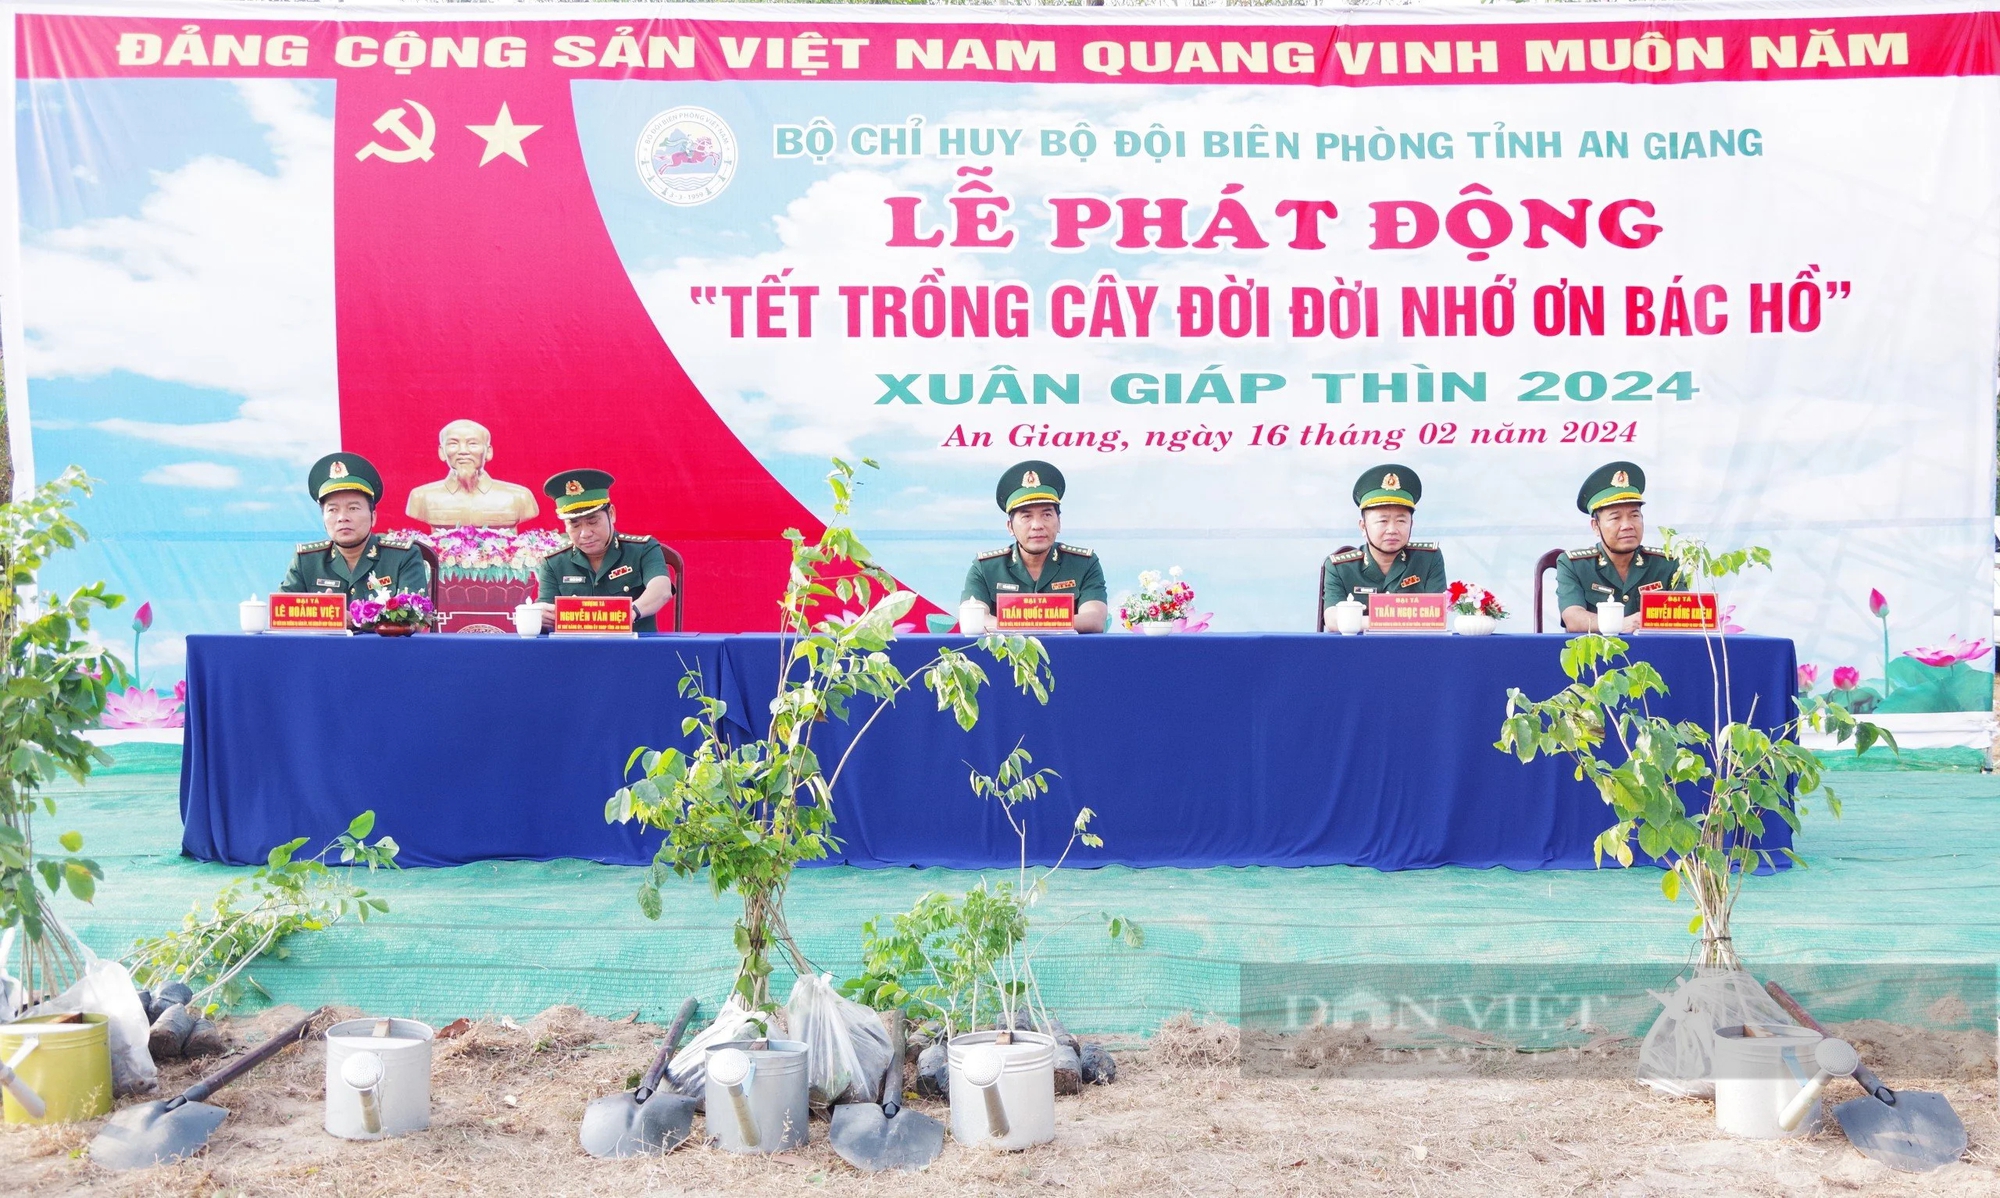 Bộ đội Biên phòng tỉnh An Giang phối hợp với địa phương trồng 100.000 cây xanh đầu Xuân Giáp Thìn 2024- Ảnh 1.